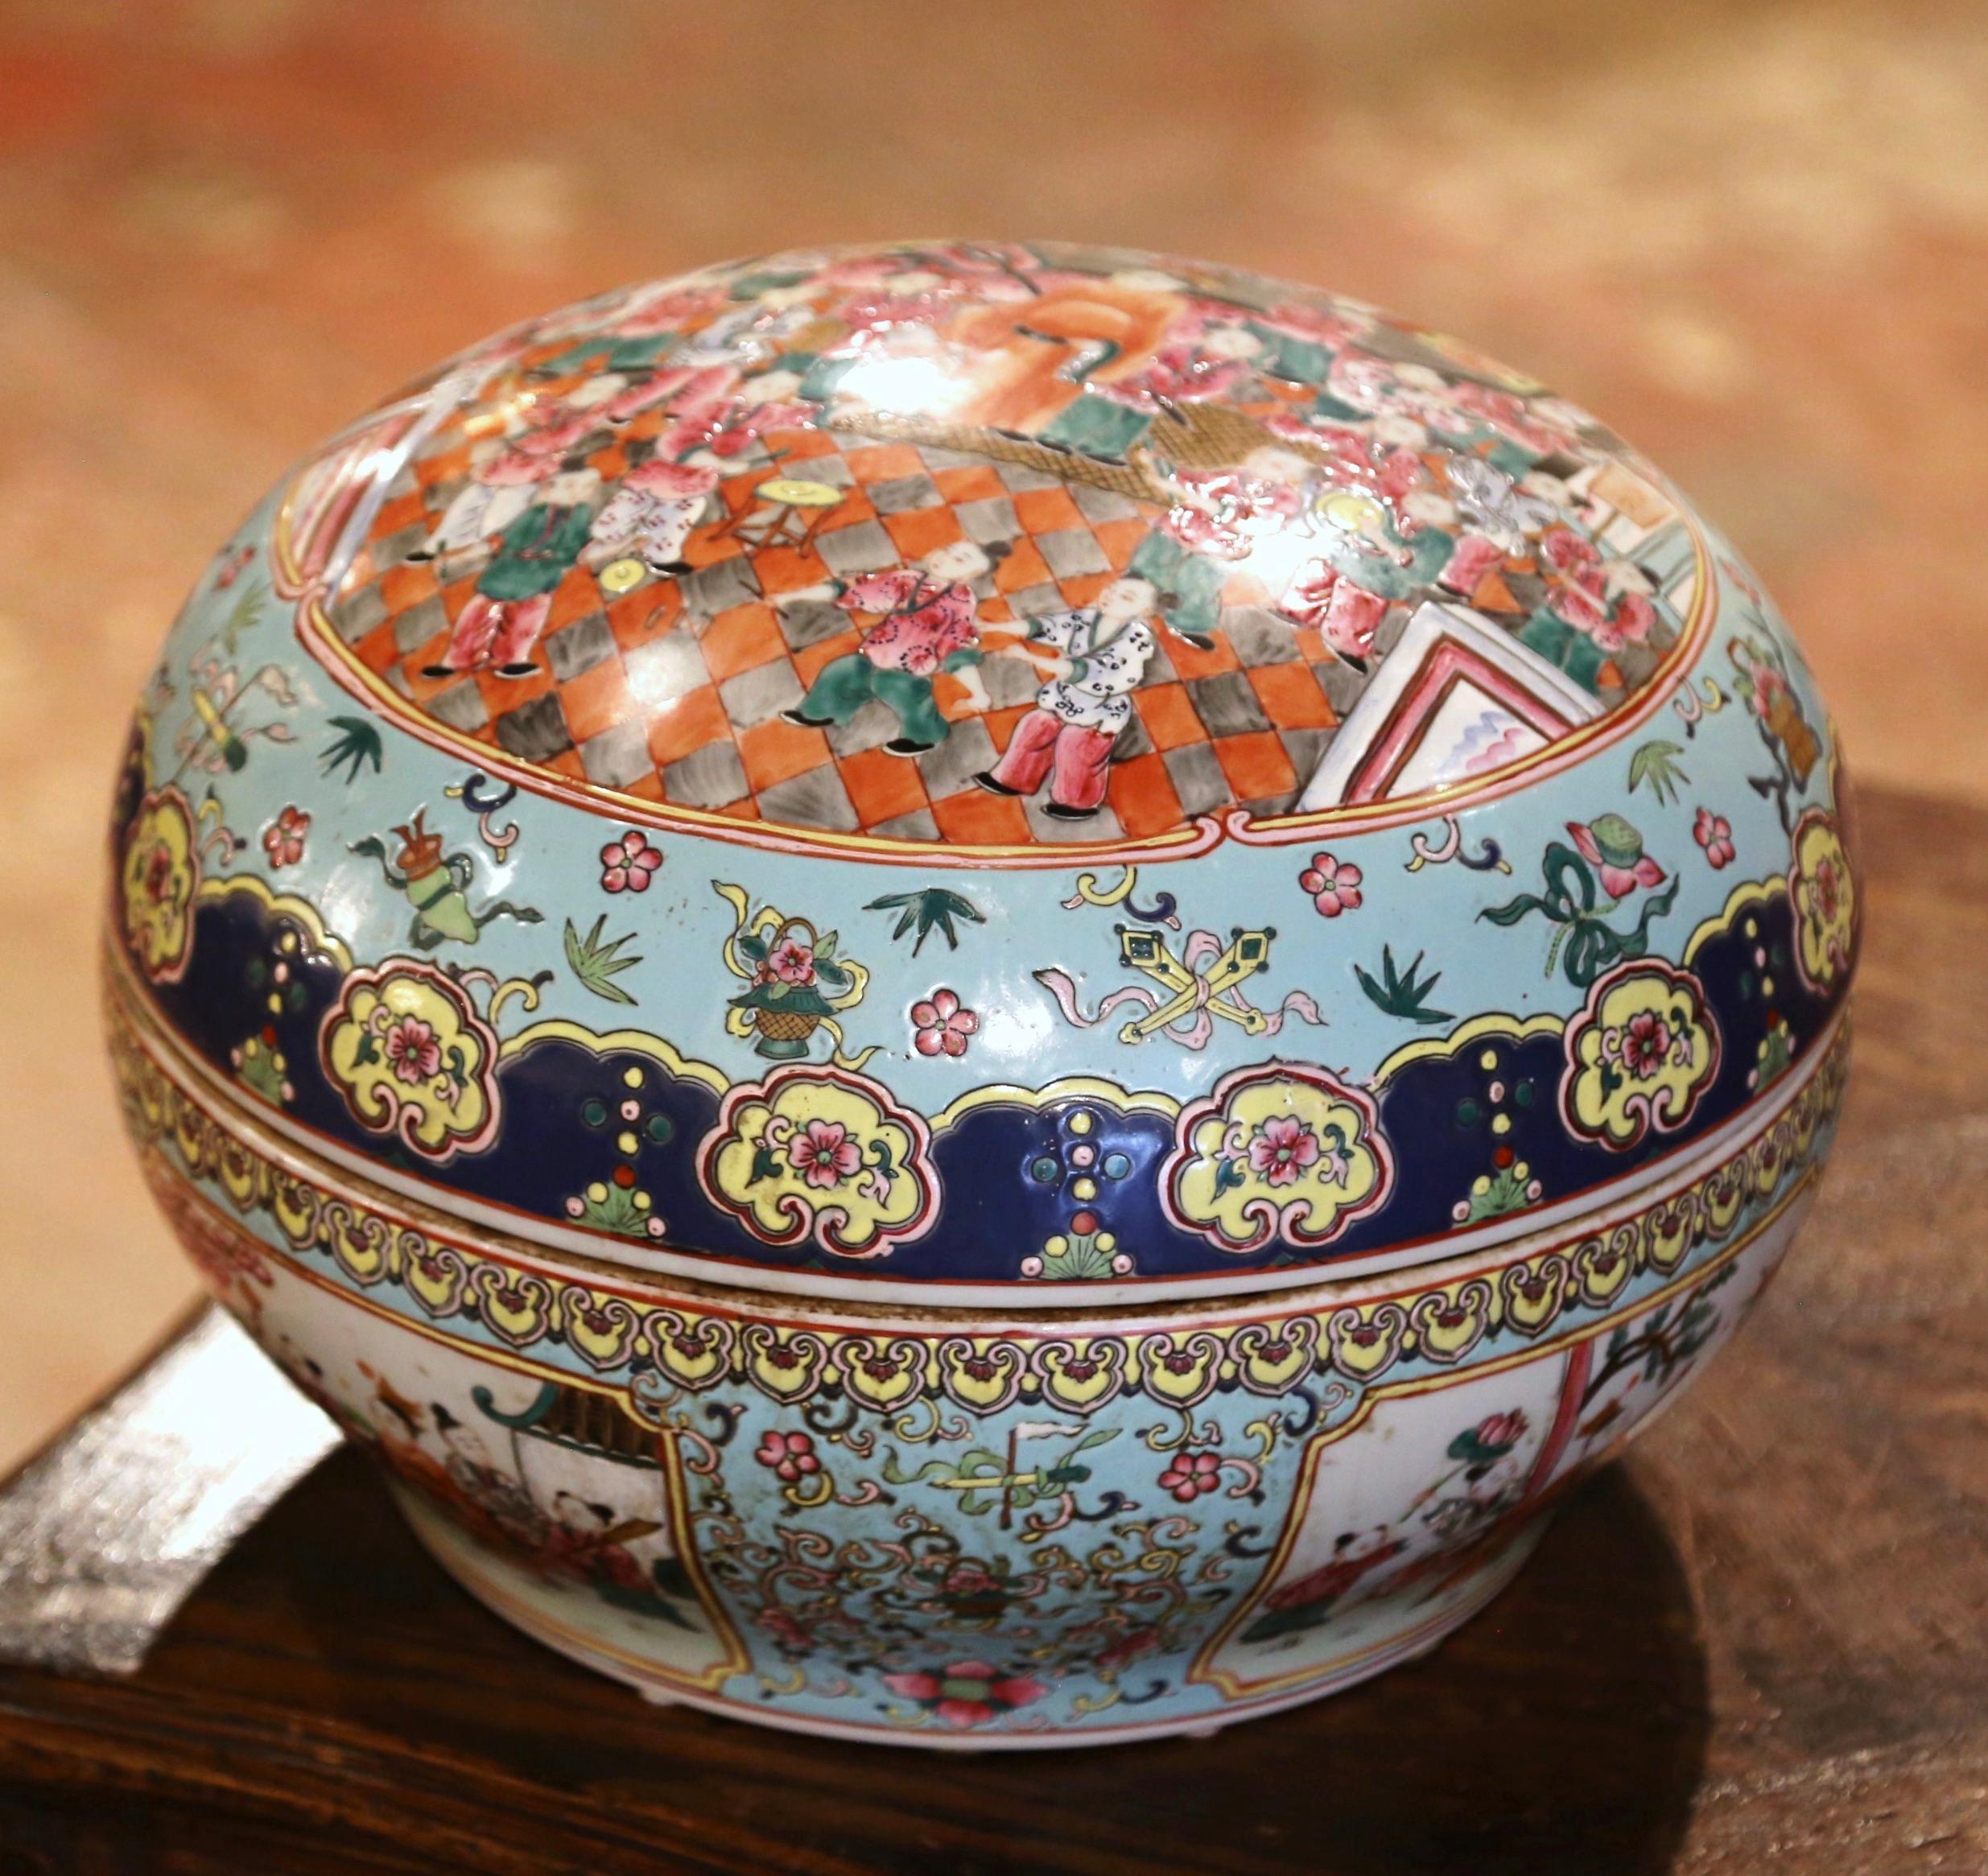 Décorez une table ou une console avec cette boîte antique colorée. Fabriquée en Chine vers 1920 et de forme ronde, la grande boîte Guangxu s'ouvre au centre et présente différentes scènes peintes à la main ; elle est également embellie de motifs